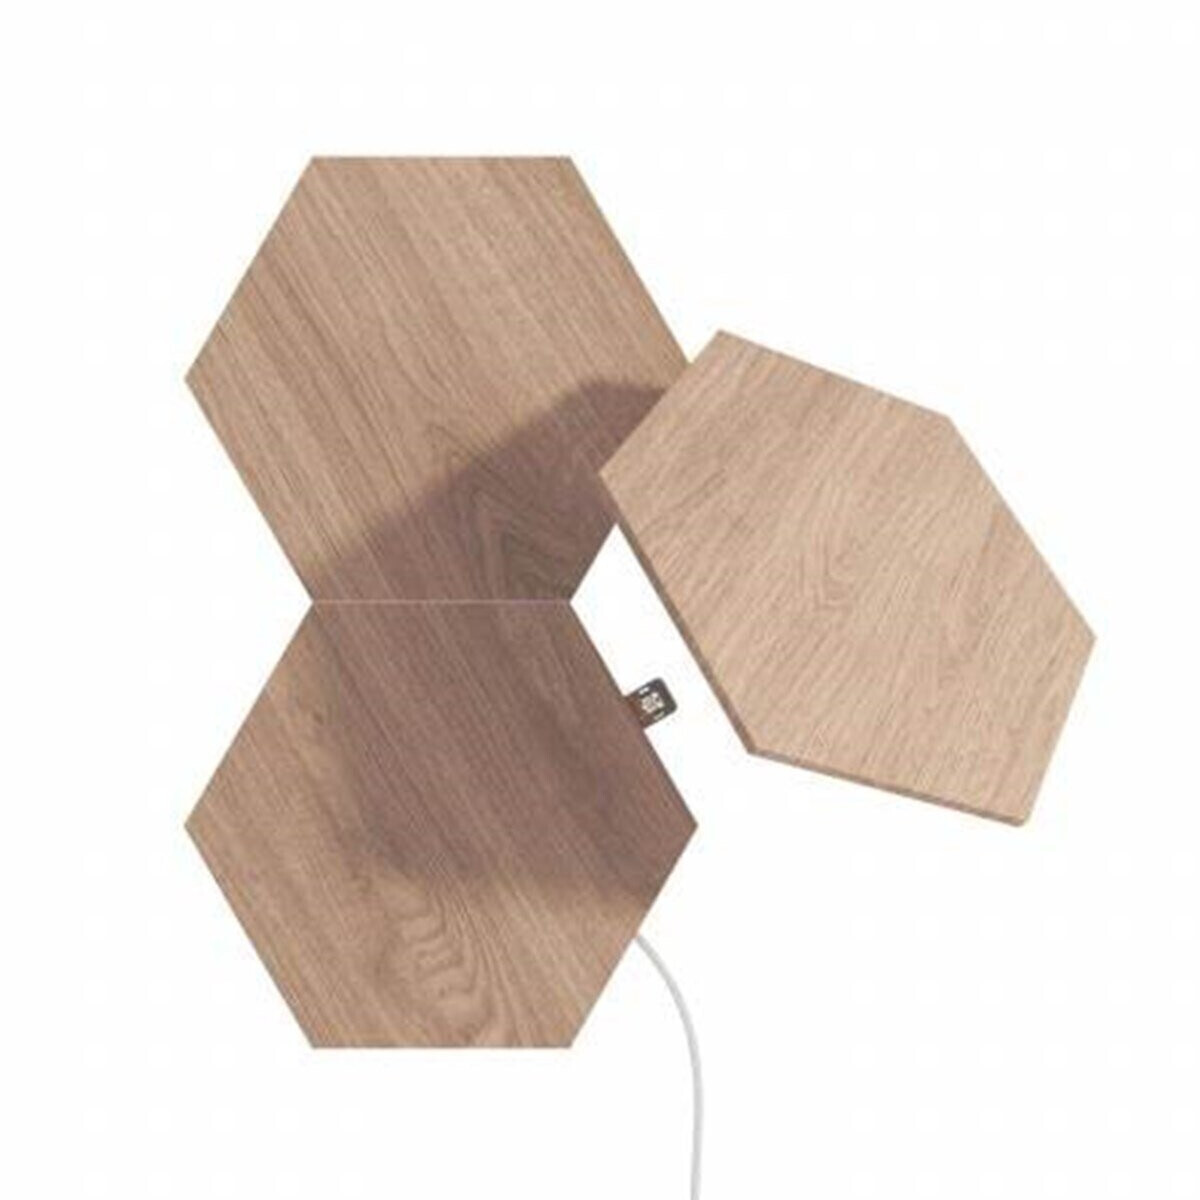 Nanoleaf Elements Look Preisvergleich | 59,99 ab 3 € Erweiterungsset Hexagons bei Wood Licht-Panele (NL52-E-0001HB-3PK)